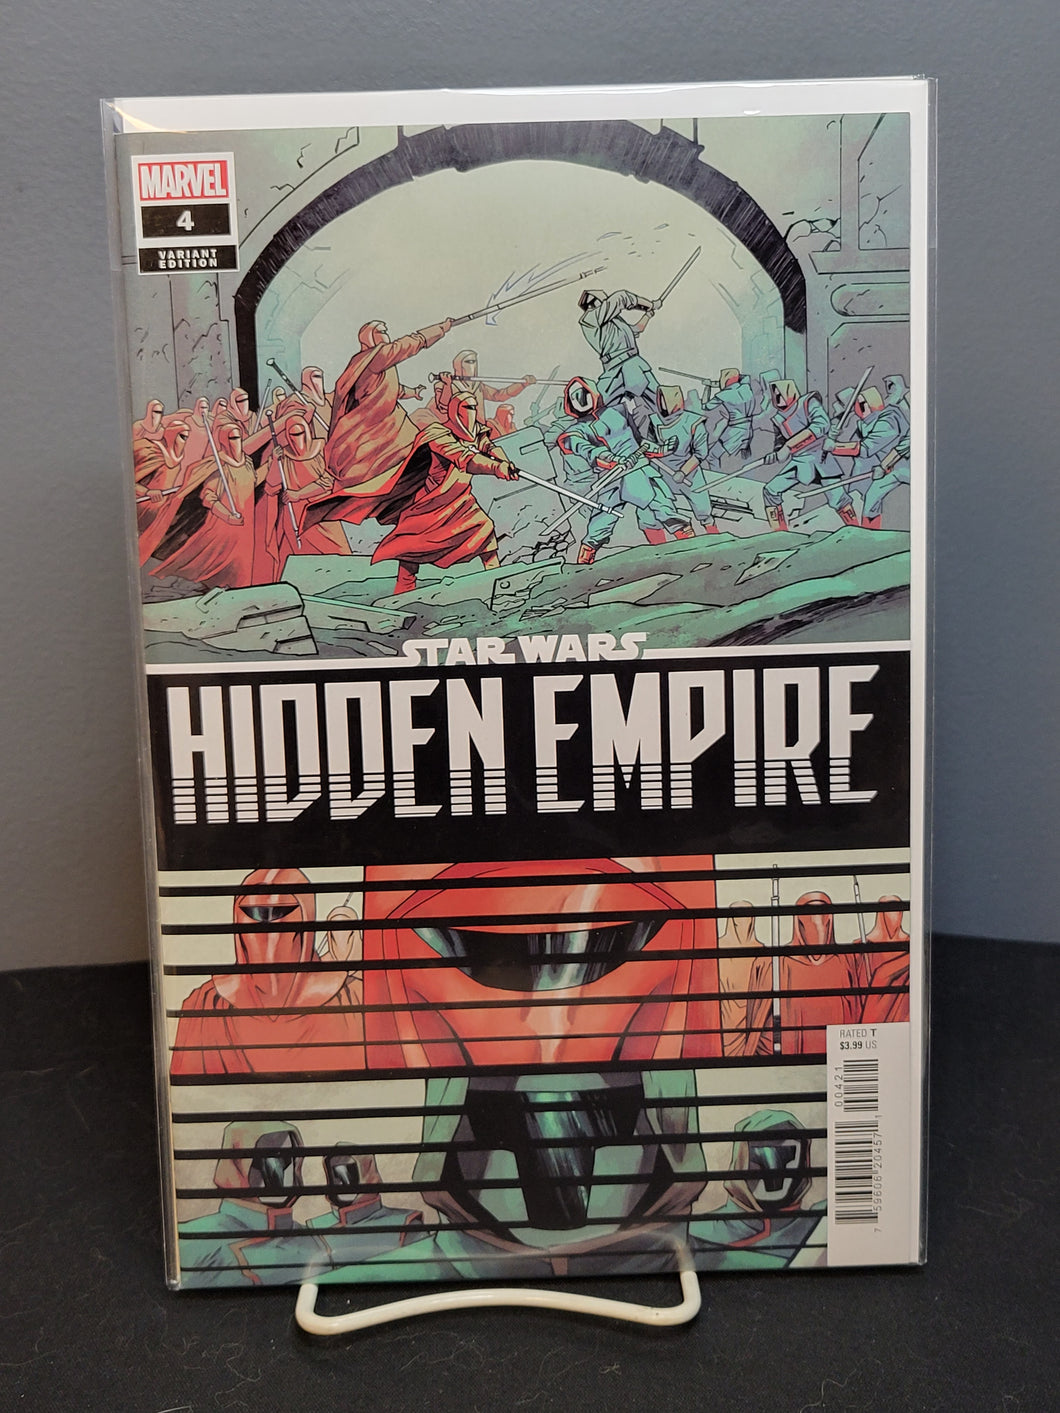 Star Wars Hidden Empire #4 Variant